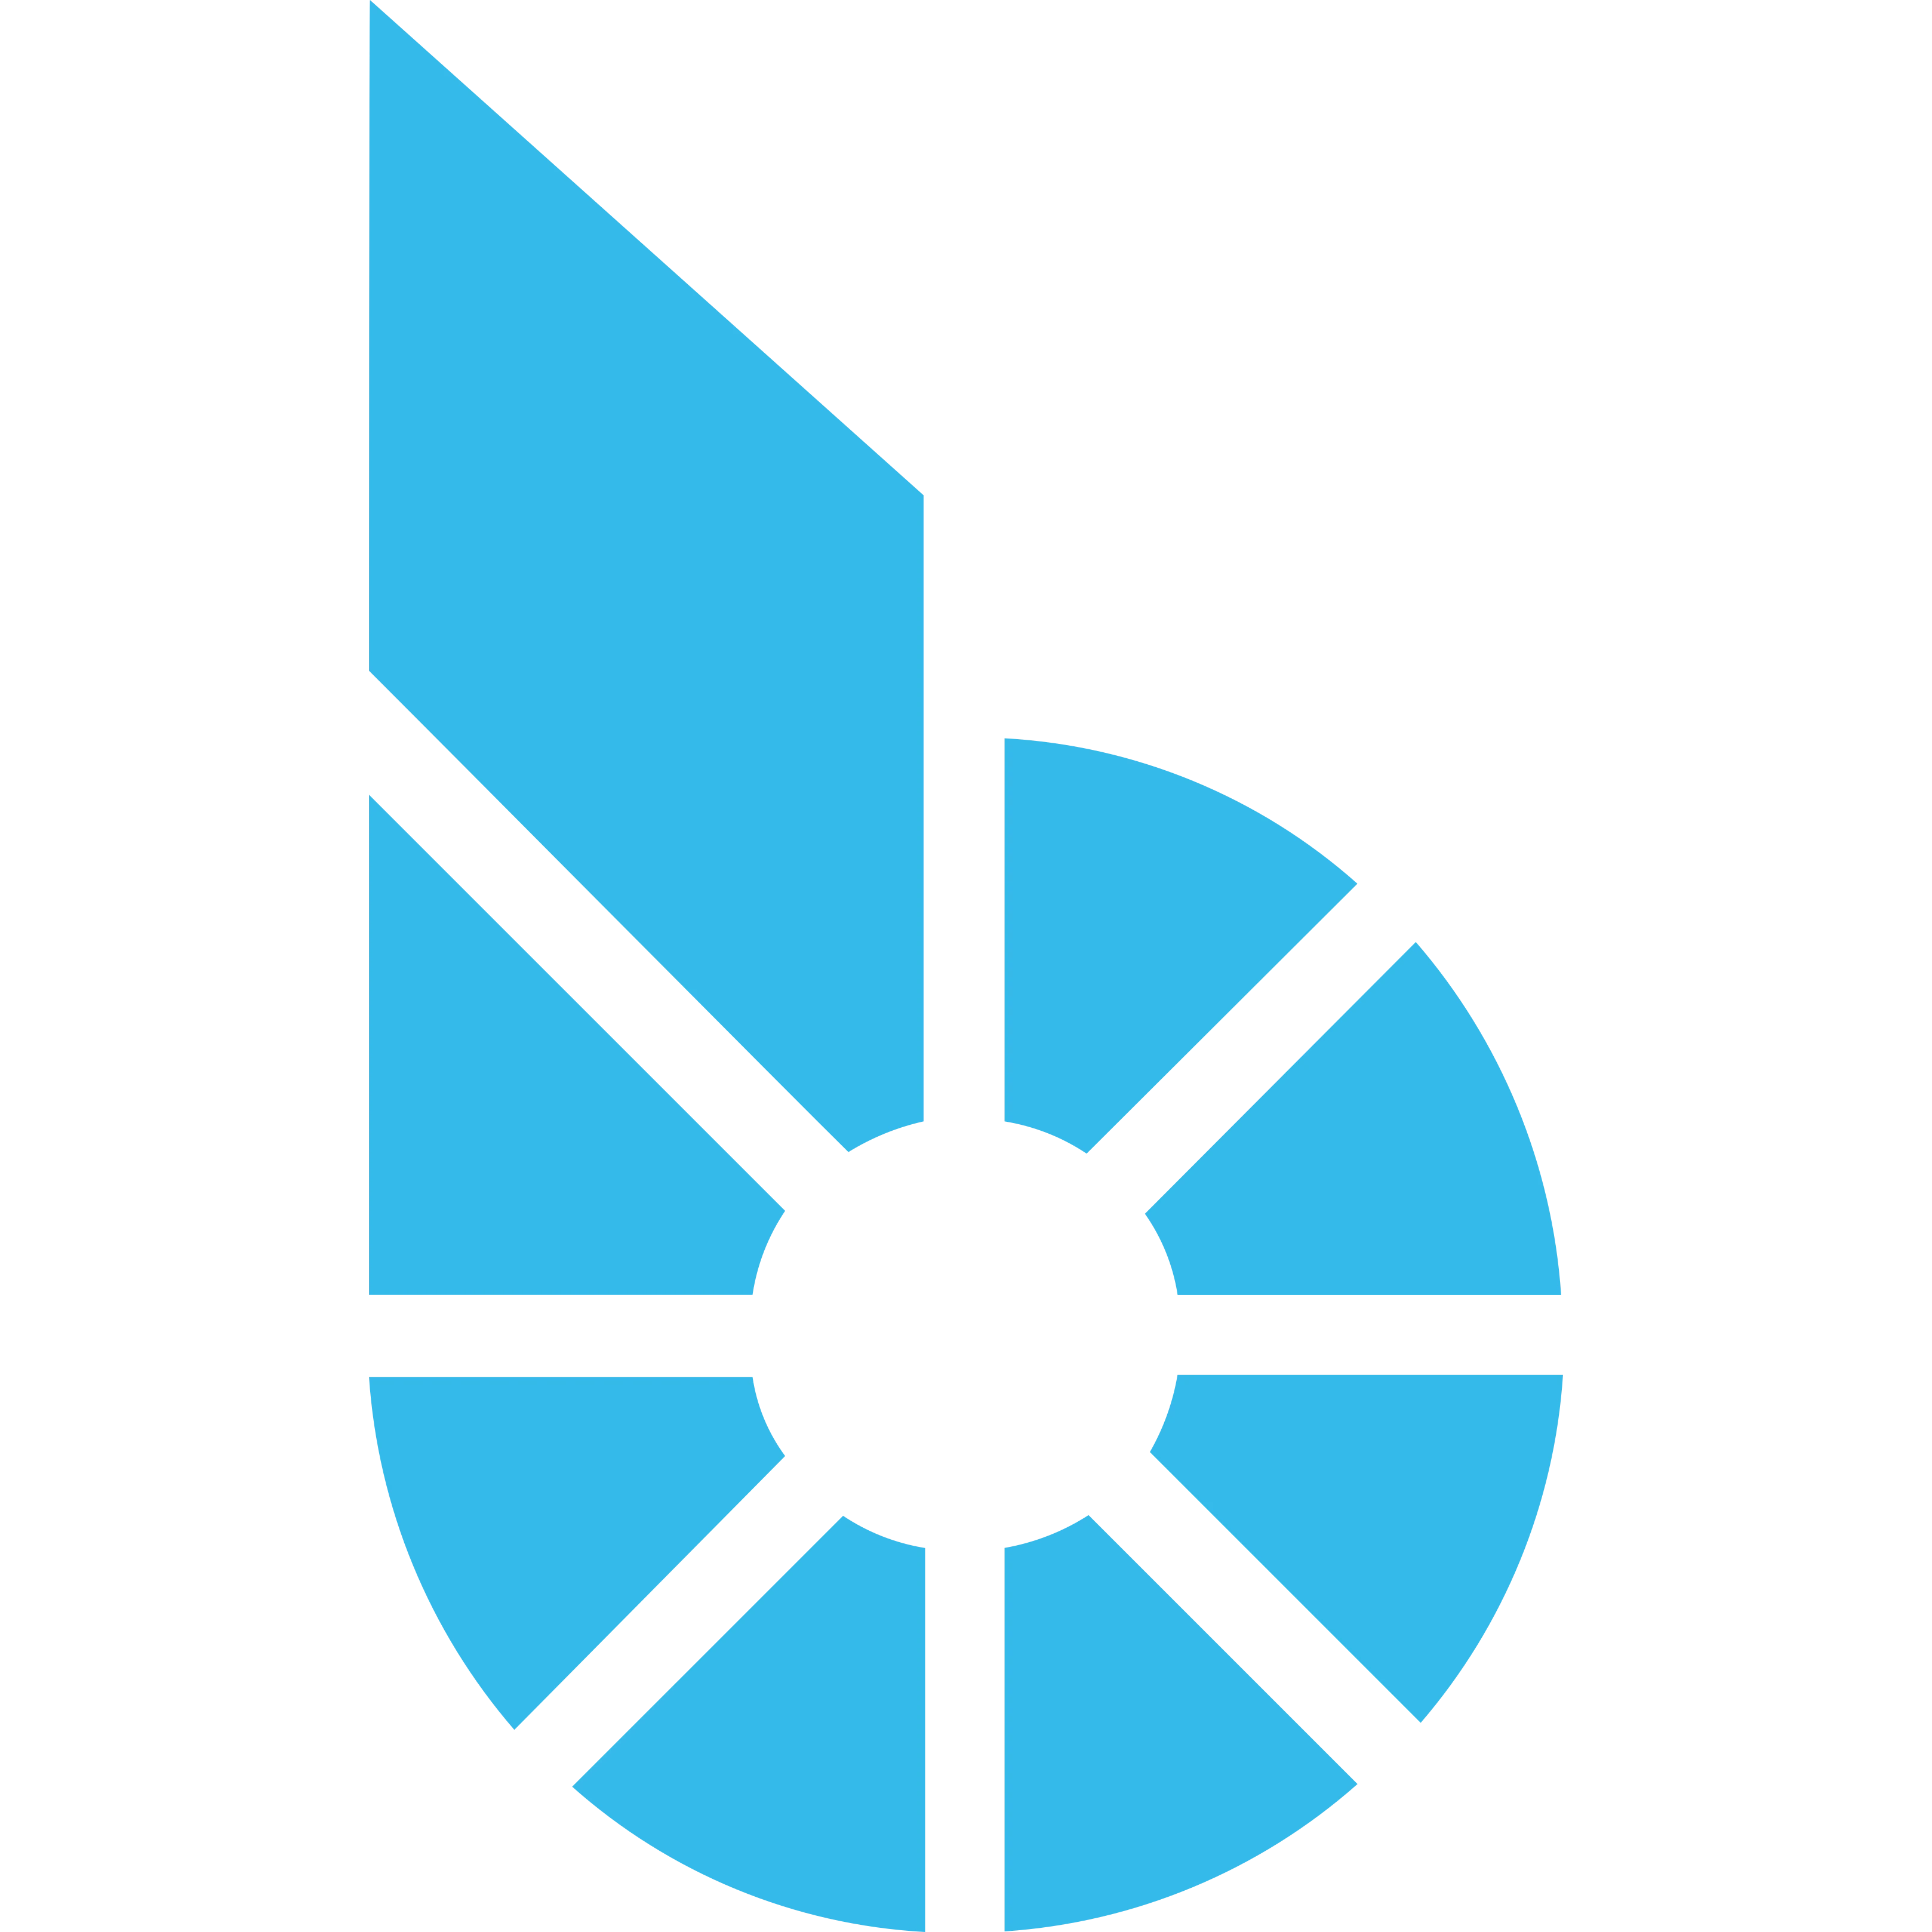 BitShares logo in png format